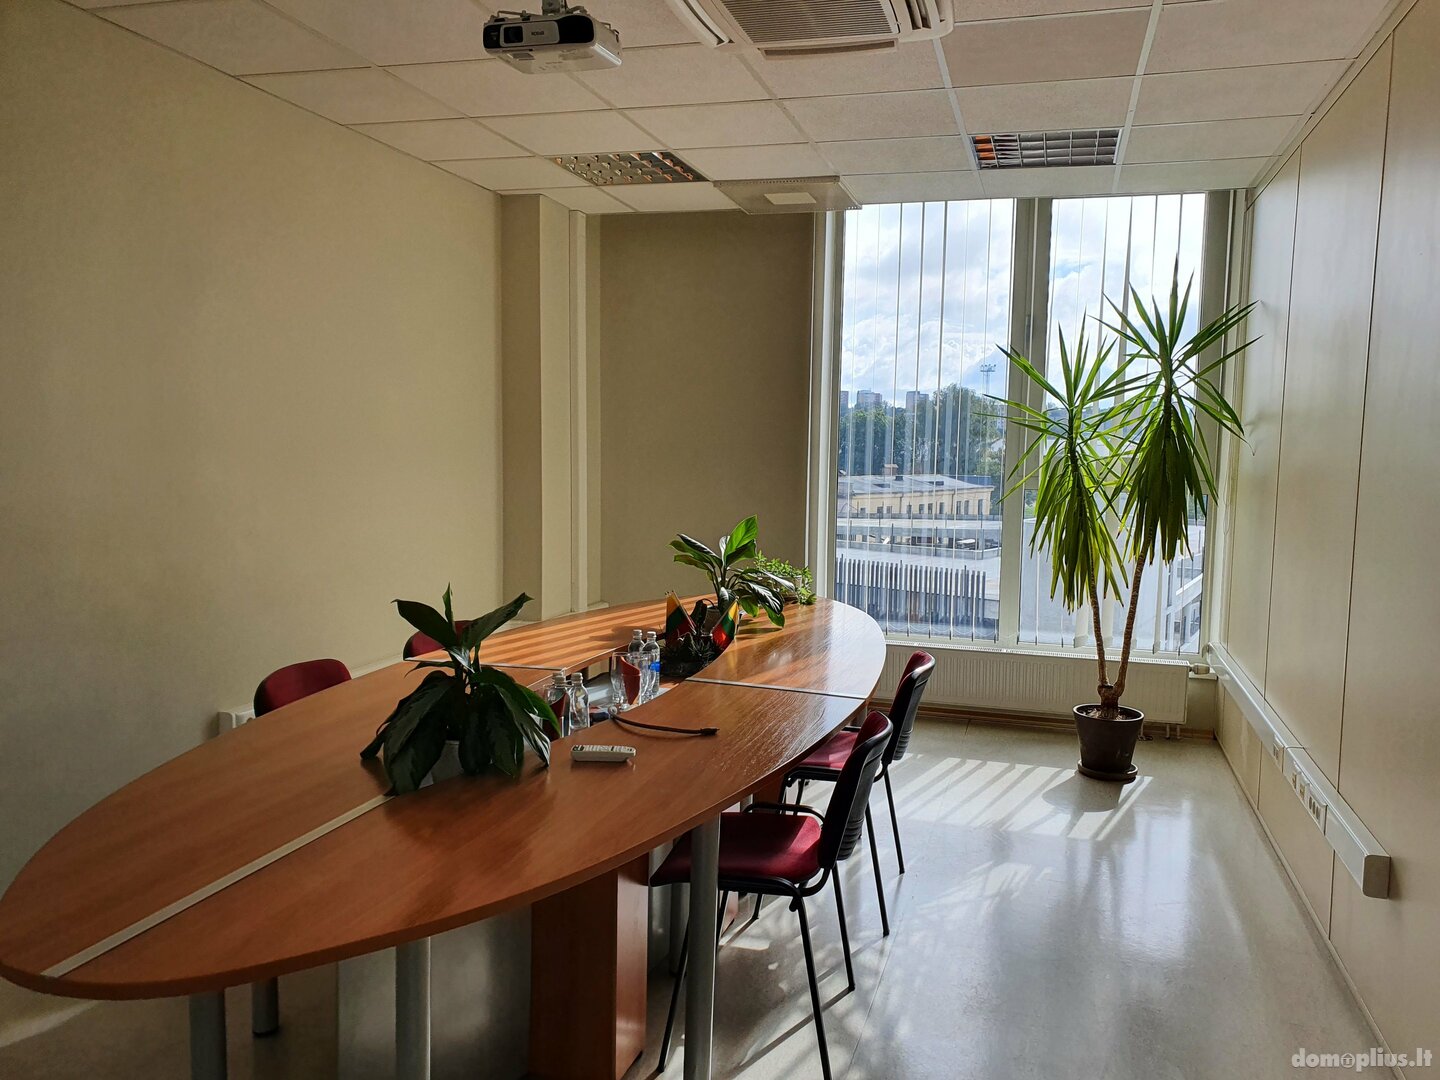 Office Premises for rent Vilniuje, Naujamiestyje, Naugarduko g.